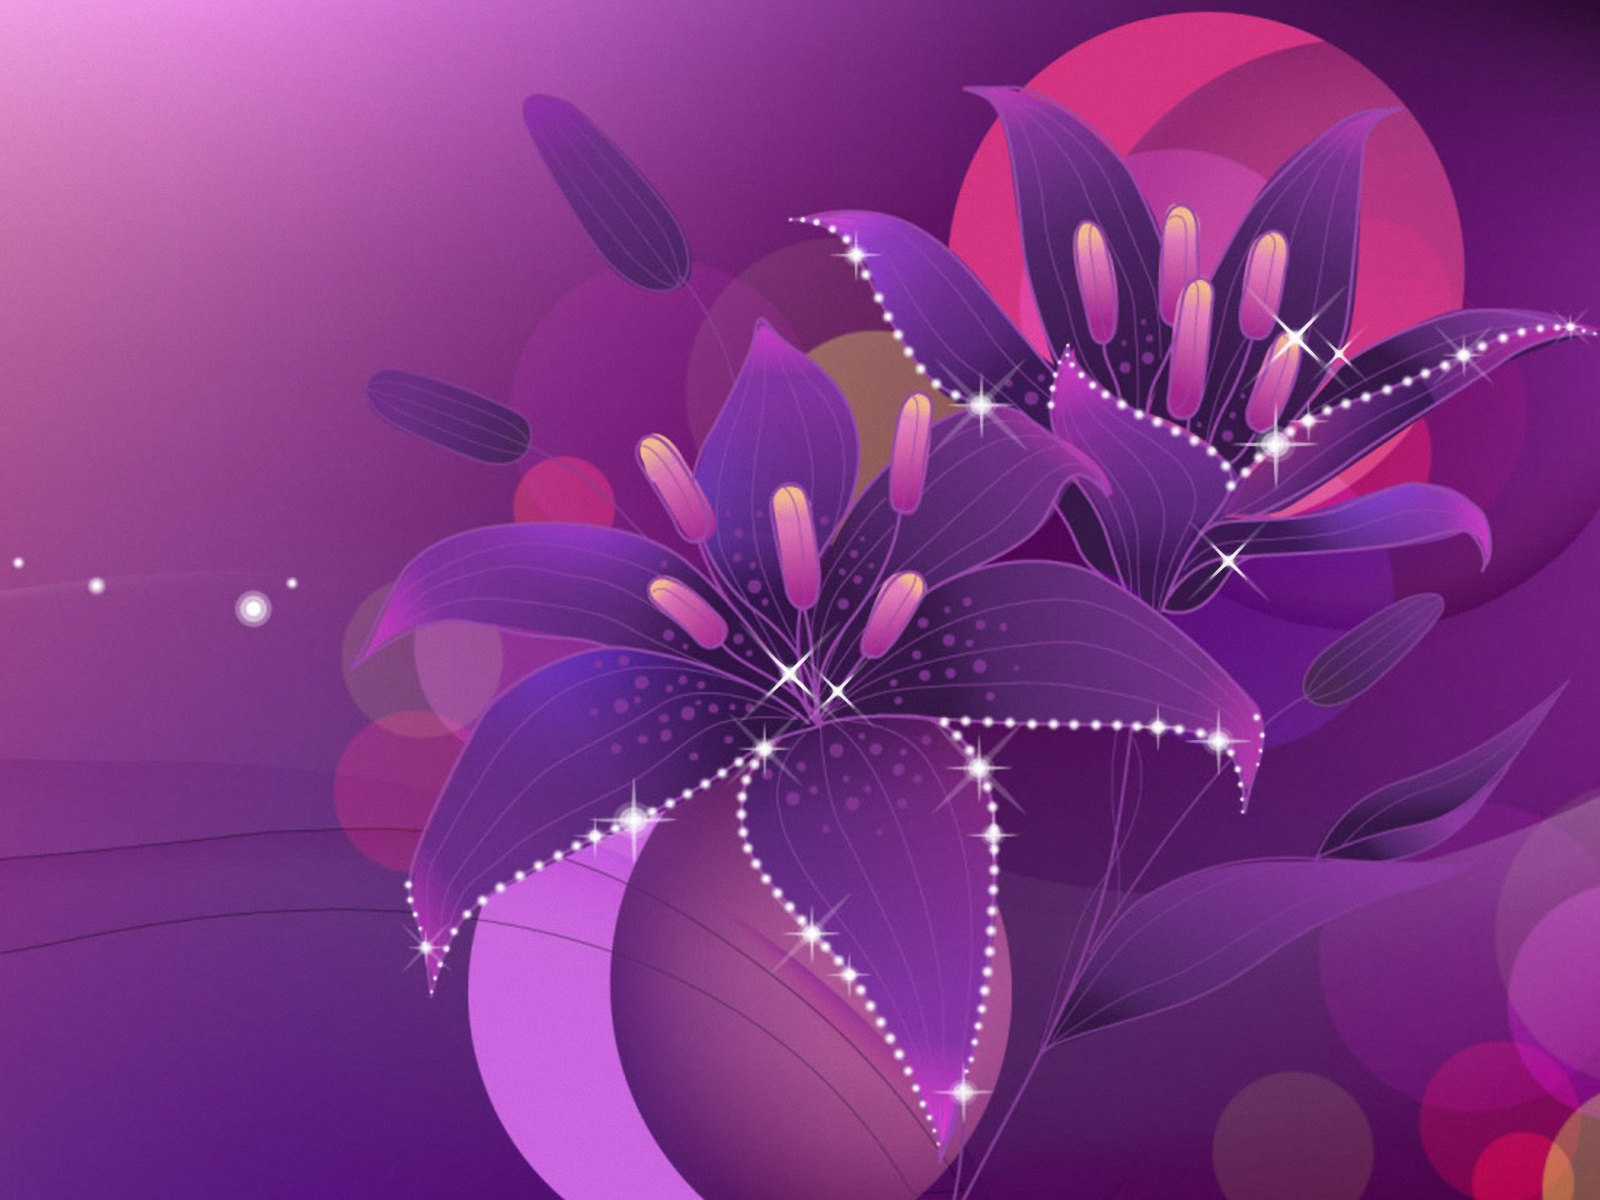 タブレット壁紙,バイオレット,紫の,ライラック,花弁,グラフィックデザイン